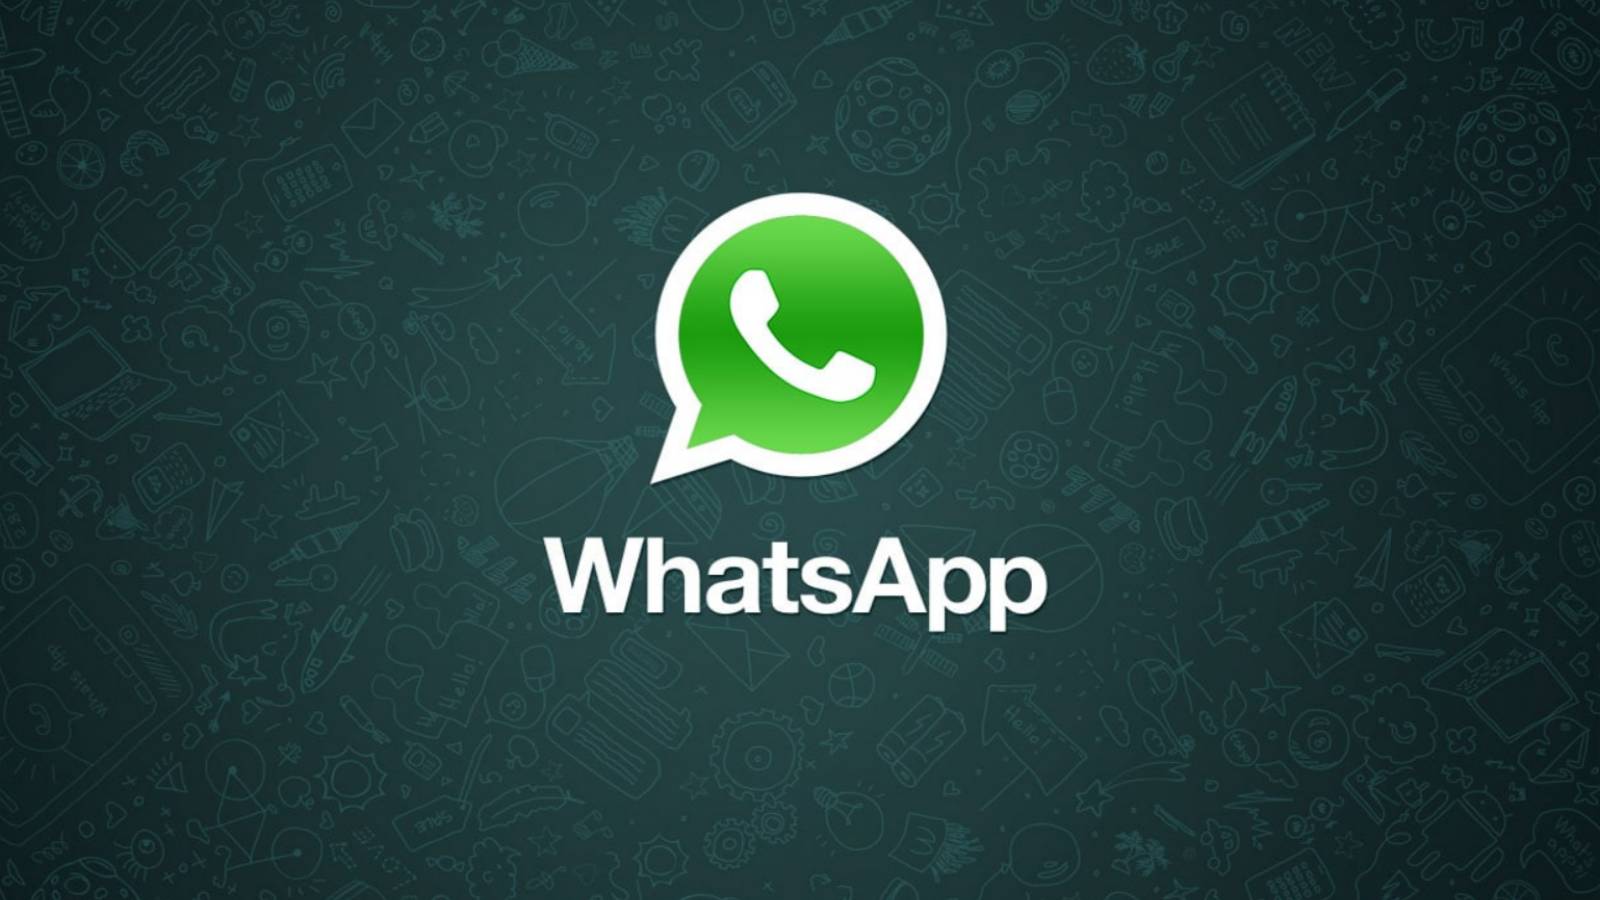 WhatsApp uudelleenjärjestely